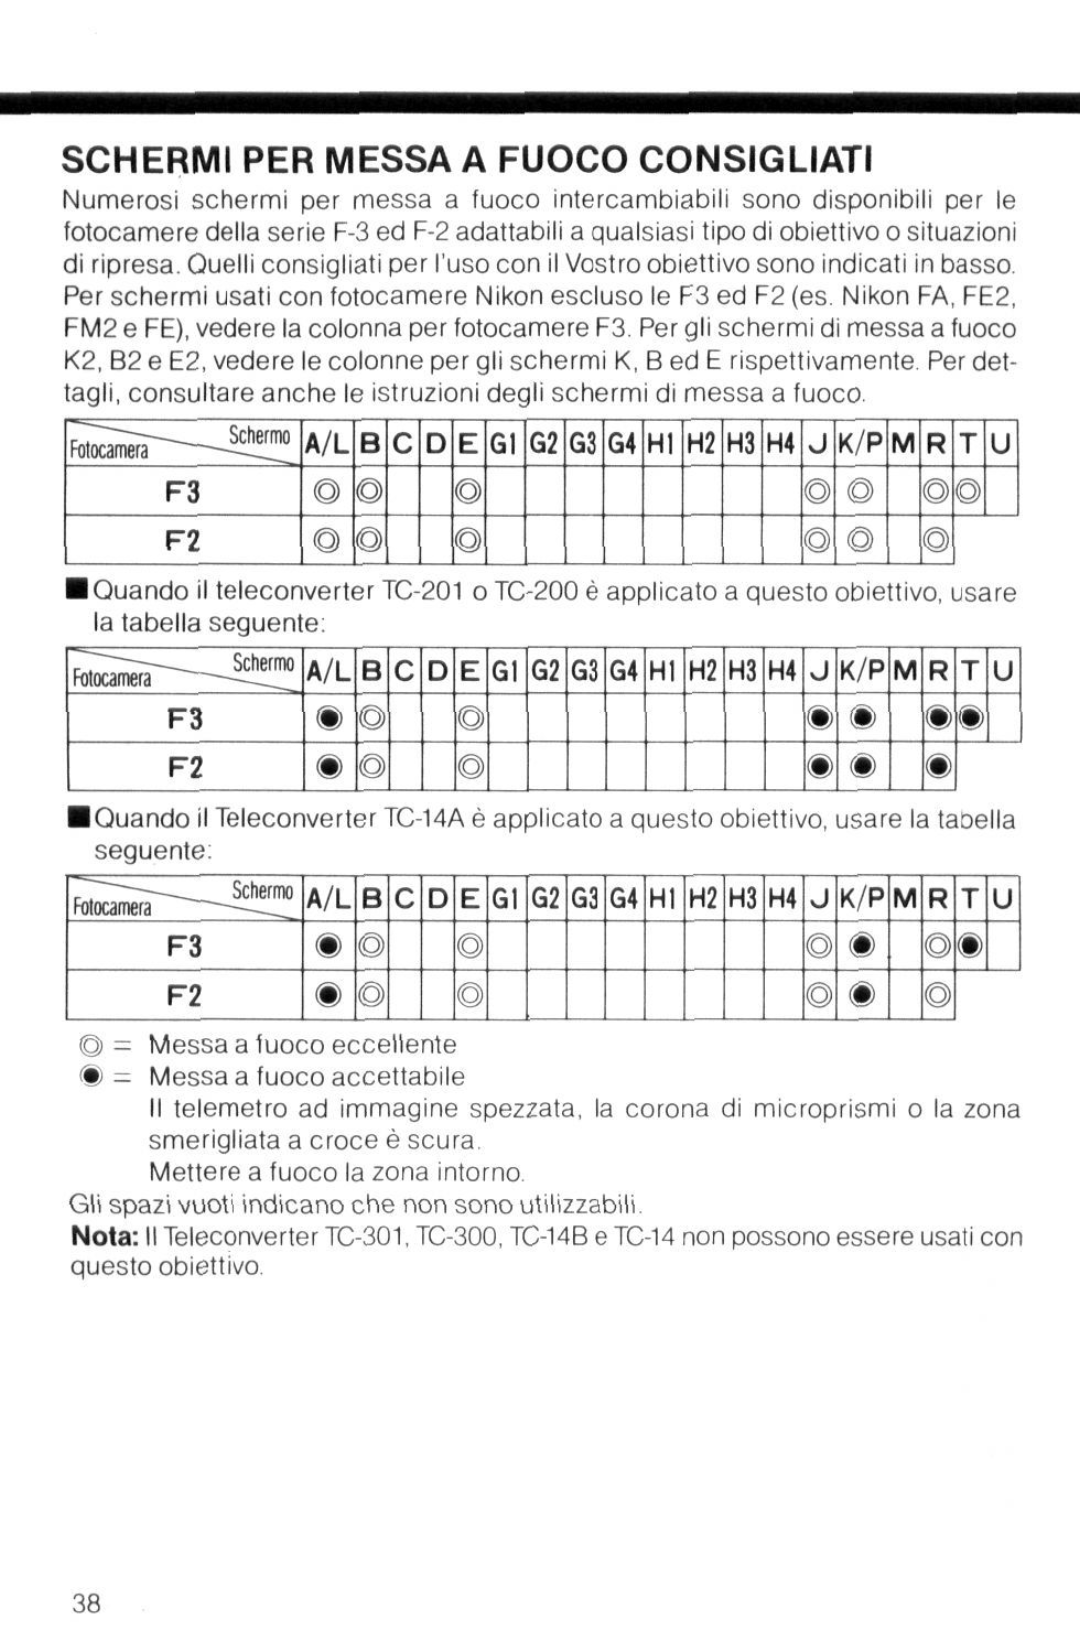 Nikon f instruction manual Schermi Per Messa A Fuoco Consigliati, m o 